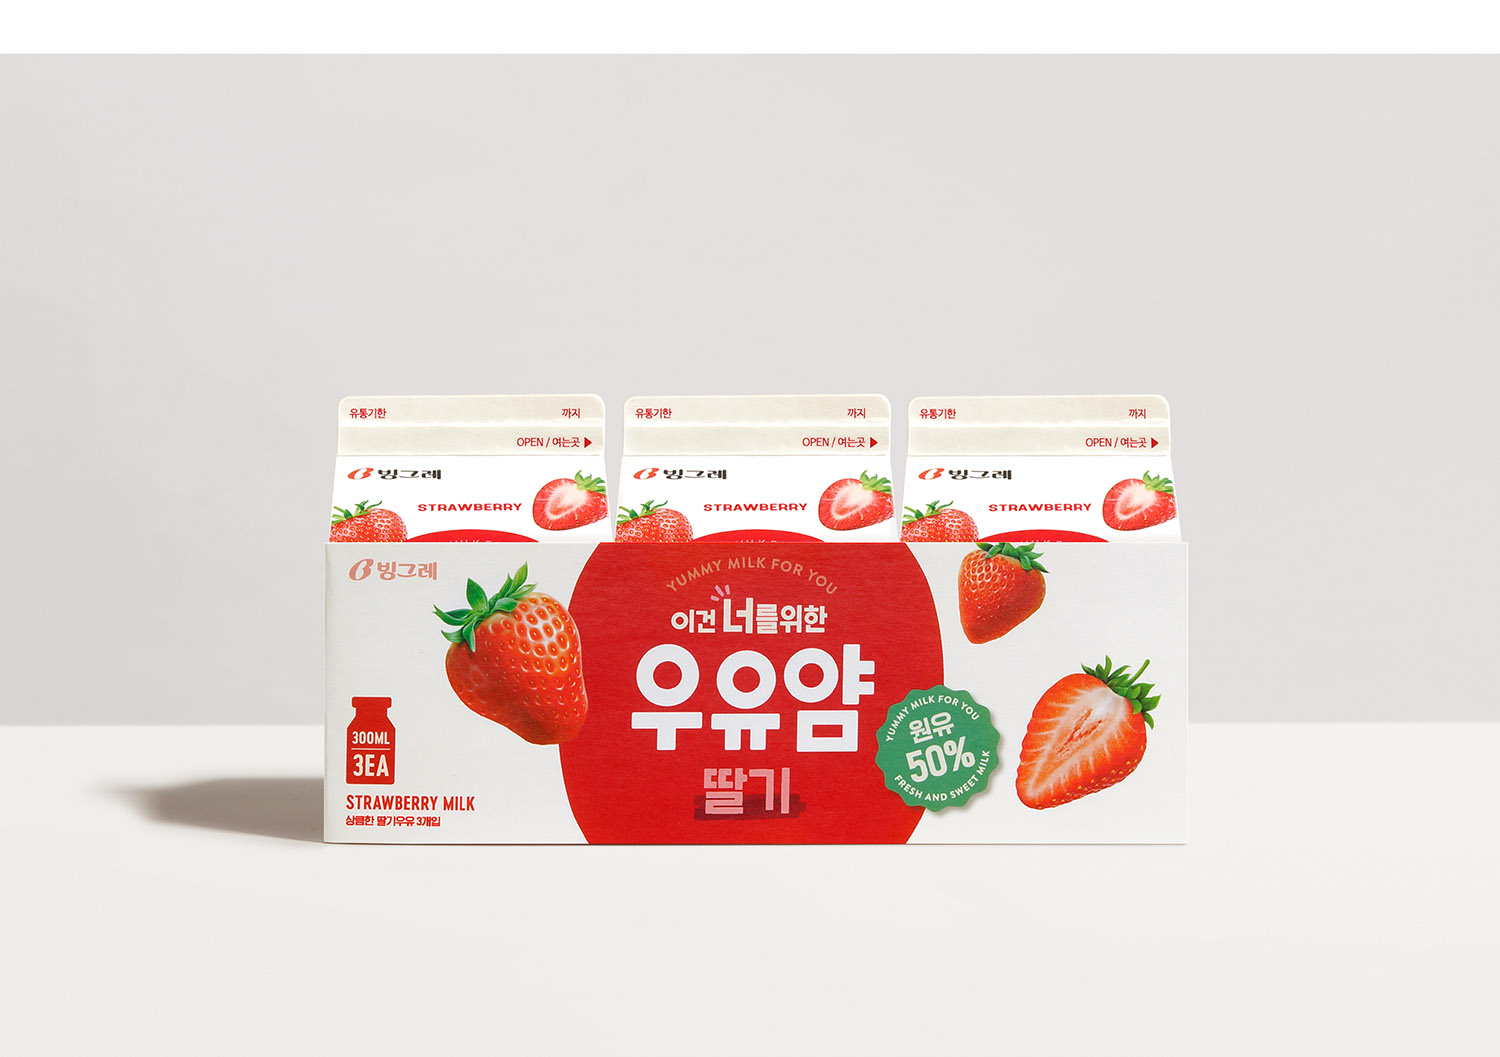 韩国MILKYUM牛奶包装设计